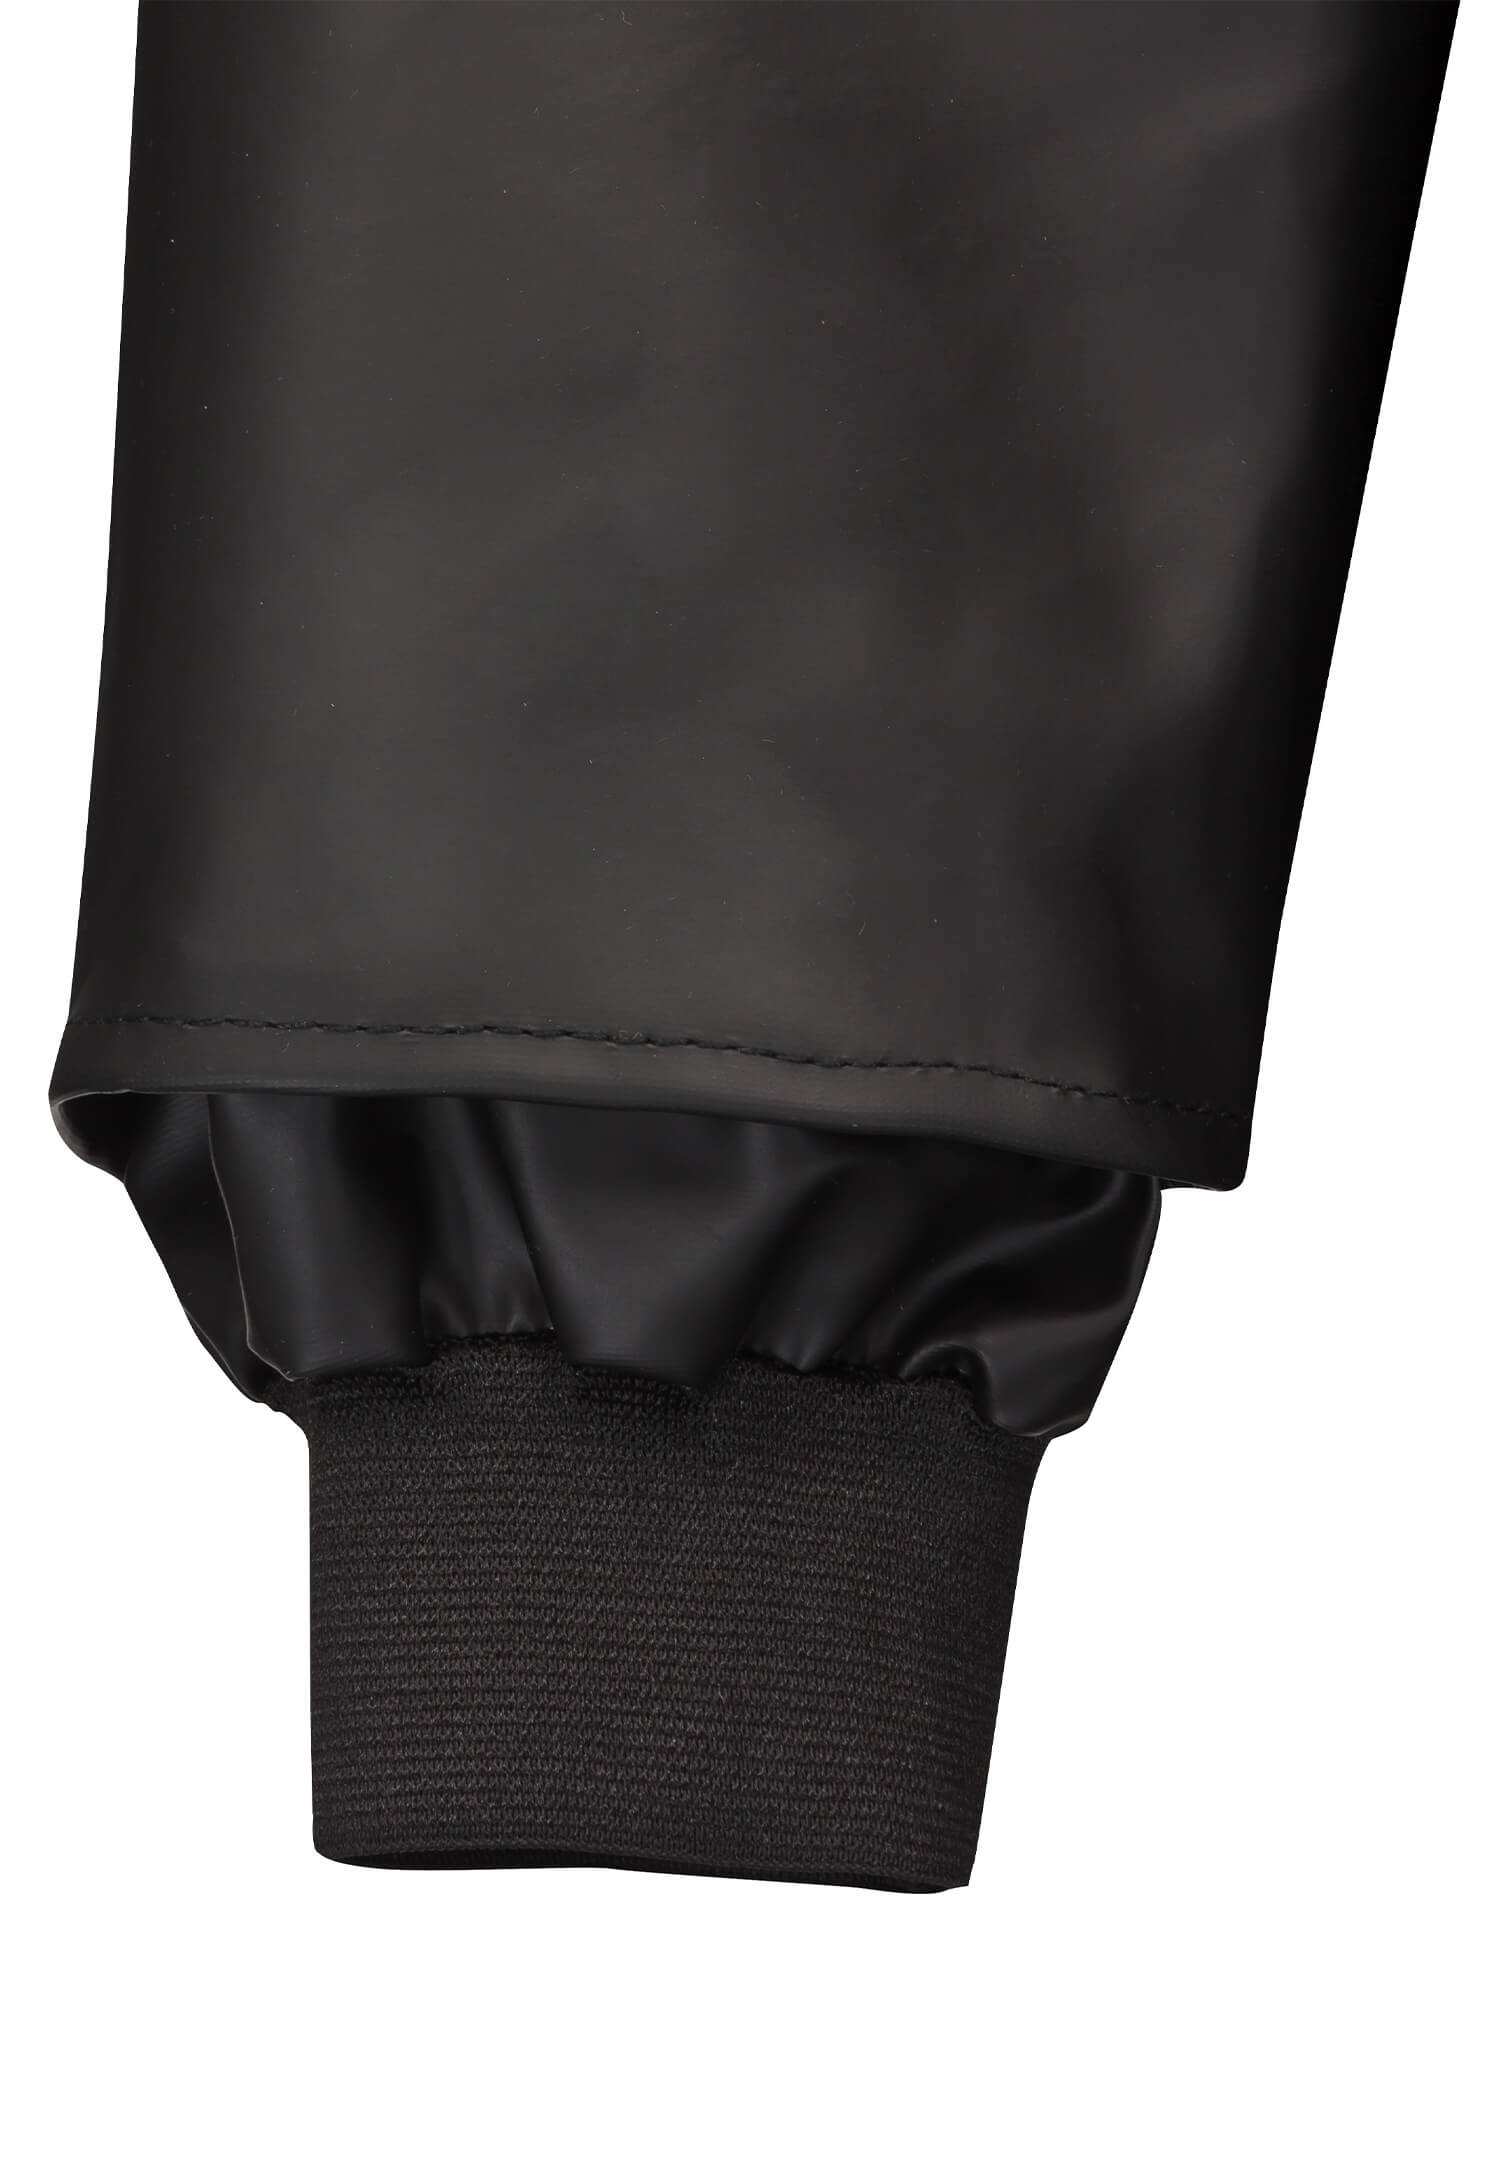 Regenjacke schwarz mit Kapuze - Wind-und Einlaufschutz - 48 -